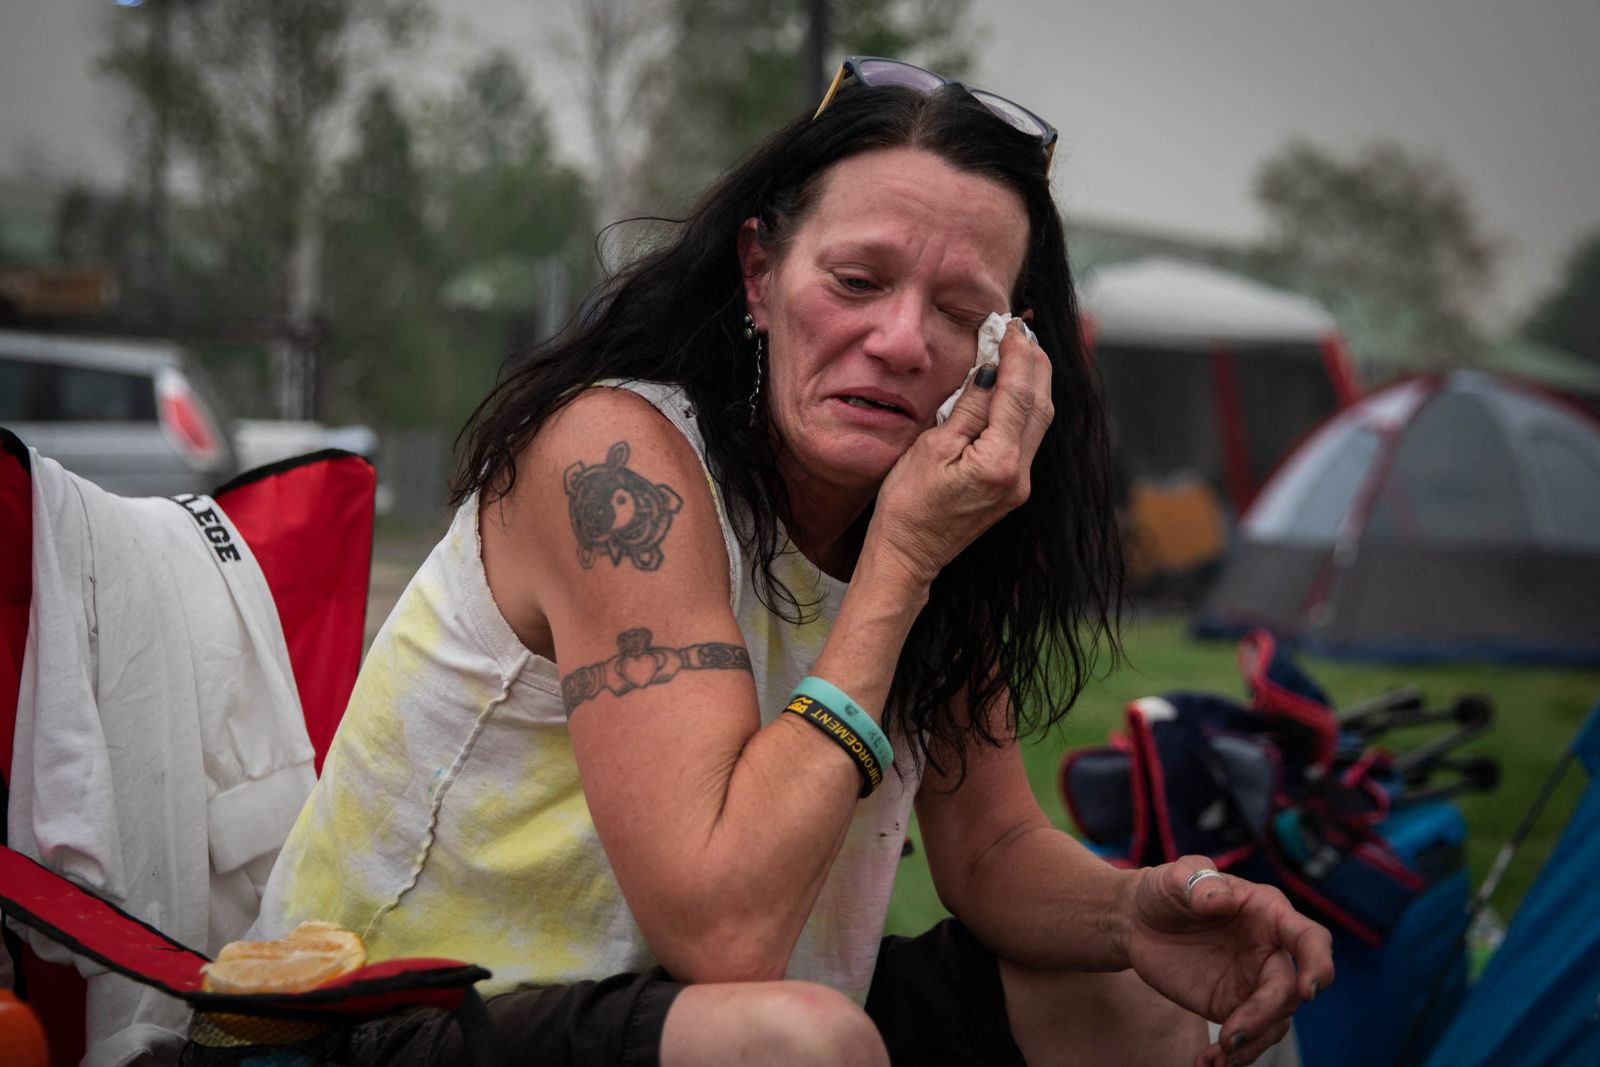 سيدة أميركية تمسح دموعها في مخيم لإيواء الفارين من حرائق ديكسي في سمرفيل بكاليفورنيا 7 أغسطس 2021 - Getty Images via AFP